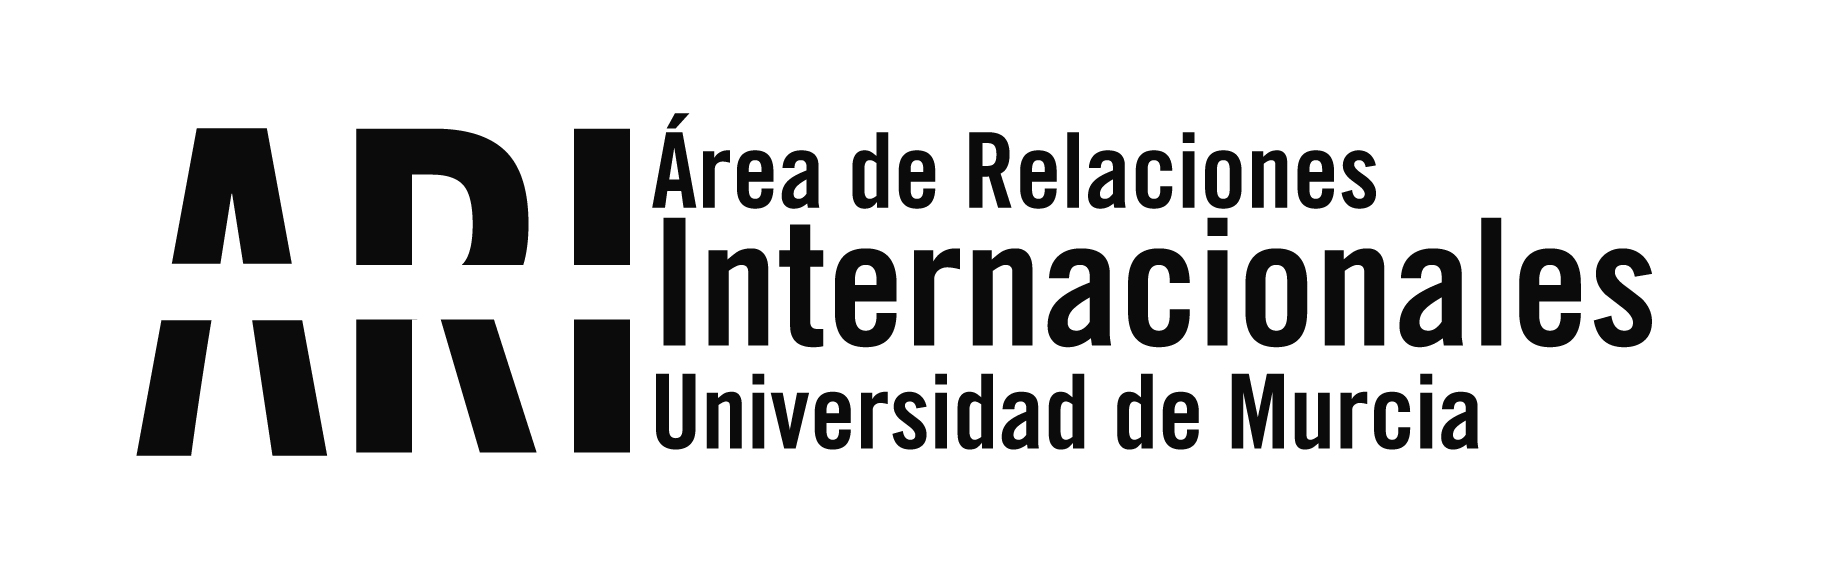 Reunión de seguimiento del proyecto Erasmus+ TIC para el apoyo a la Internacionalización en instituciones de América Latina - Área de Relaciones Internacionales